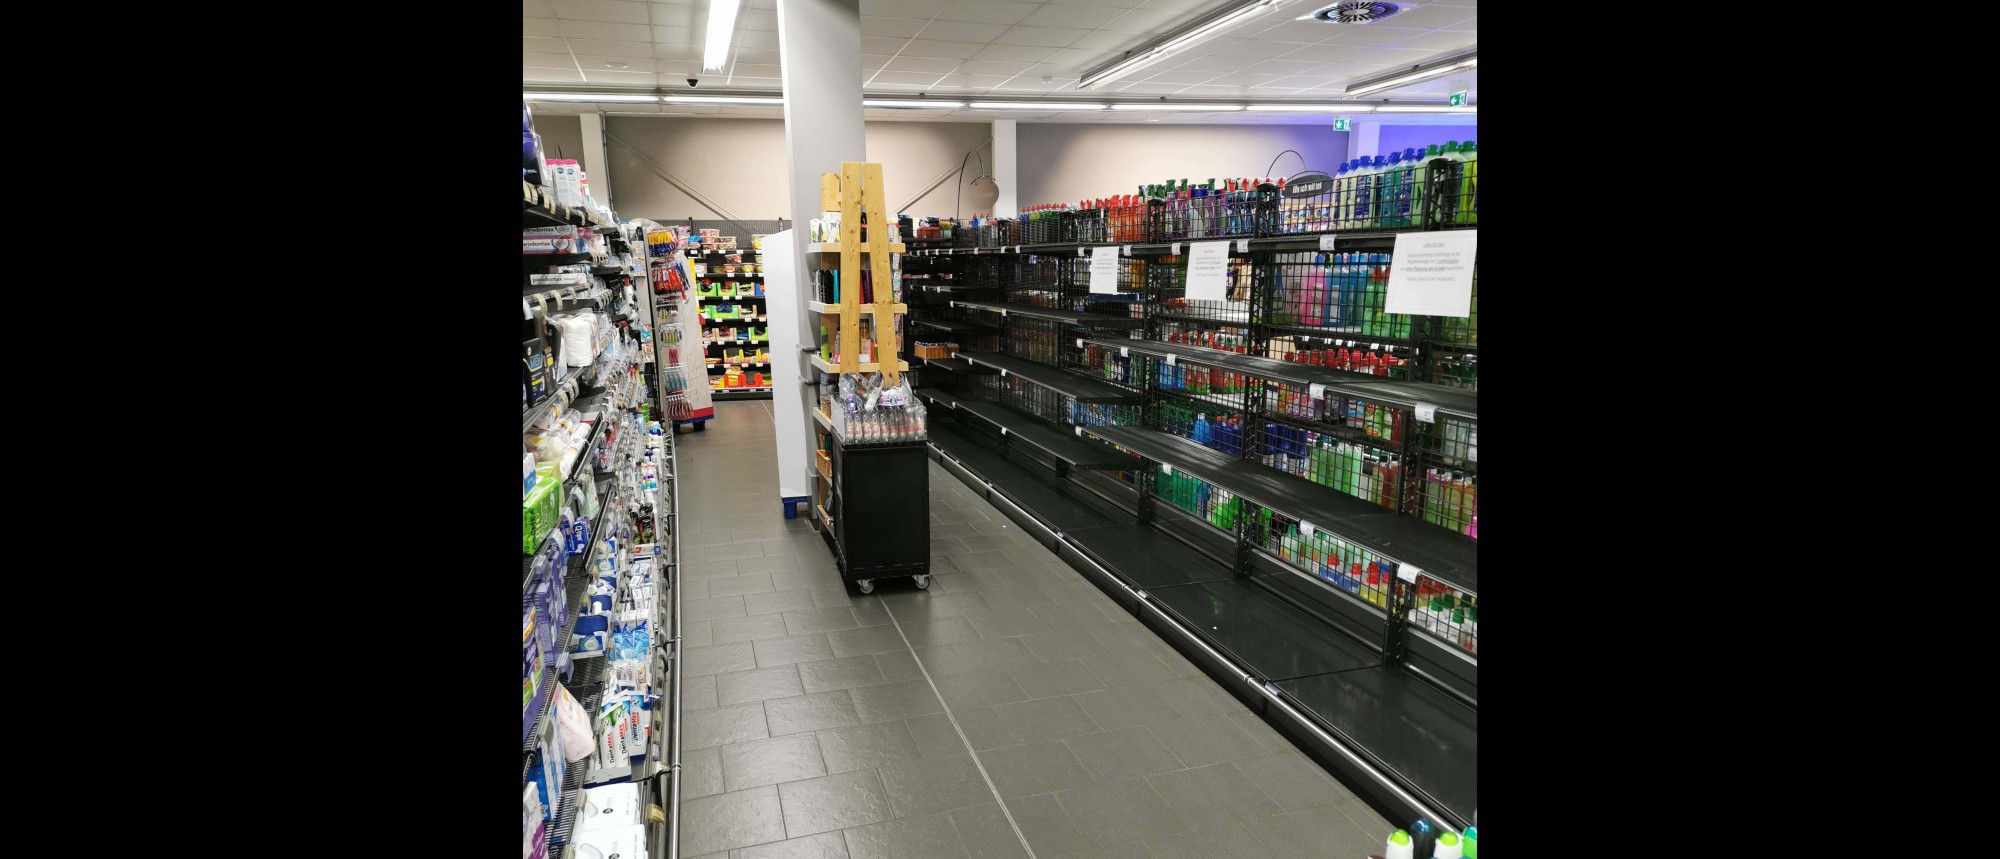 Links ein gefülltes, rechts ein leeres Regal im Supermarkt.